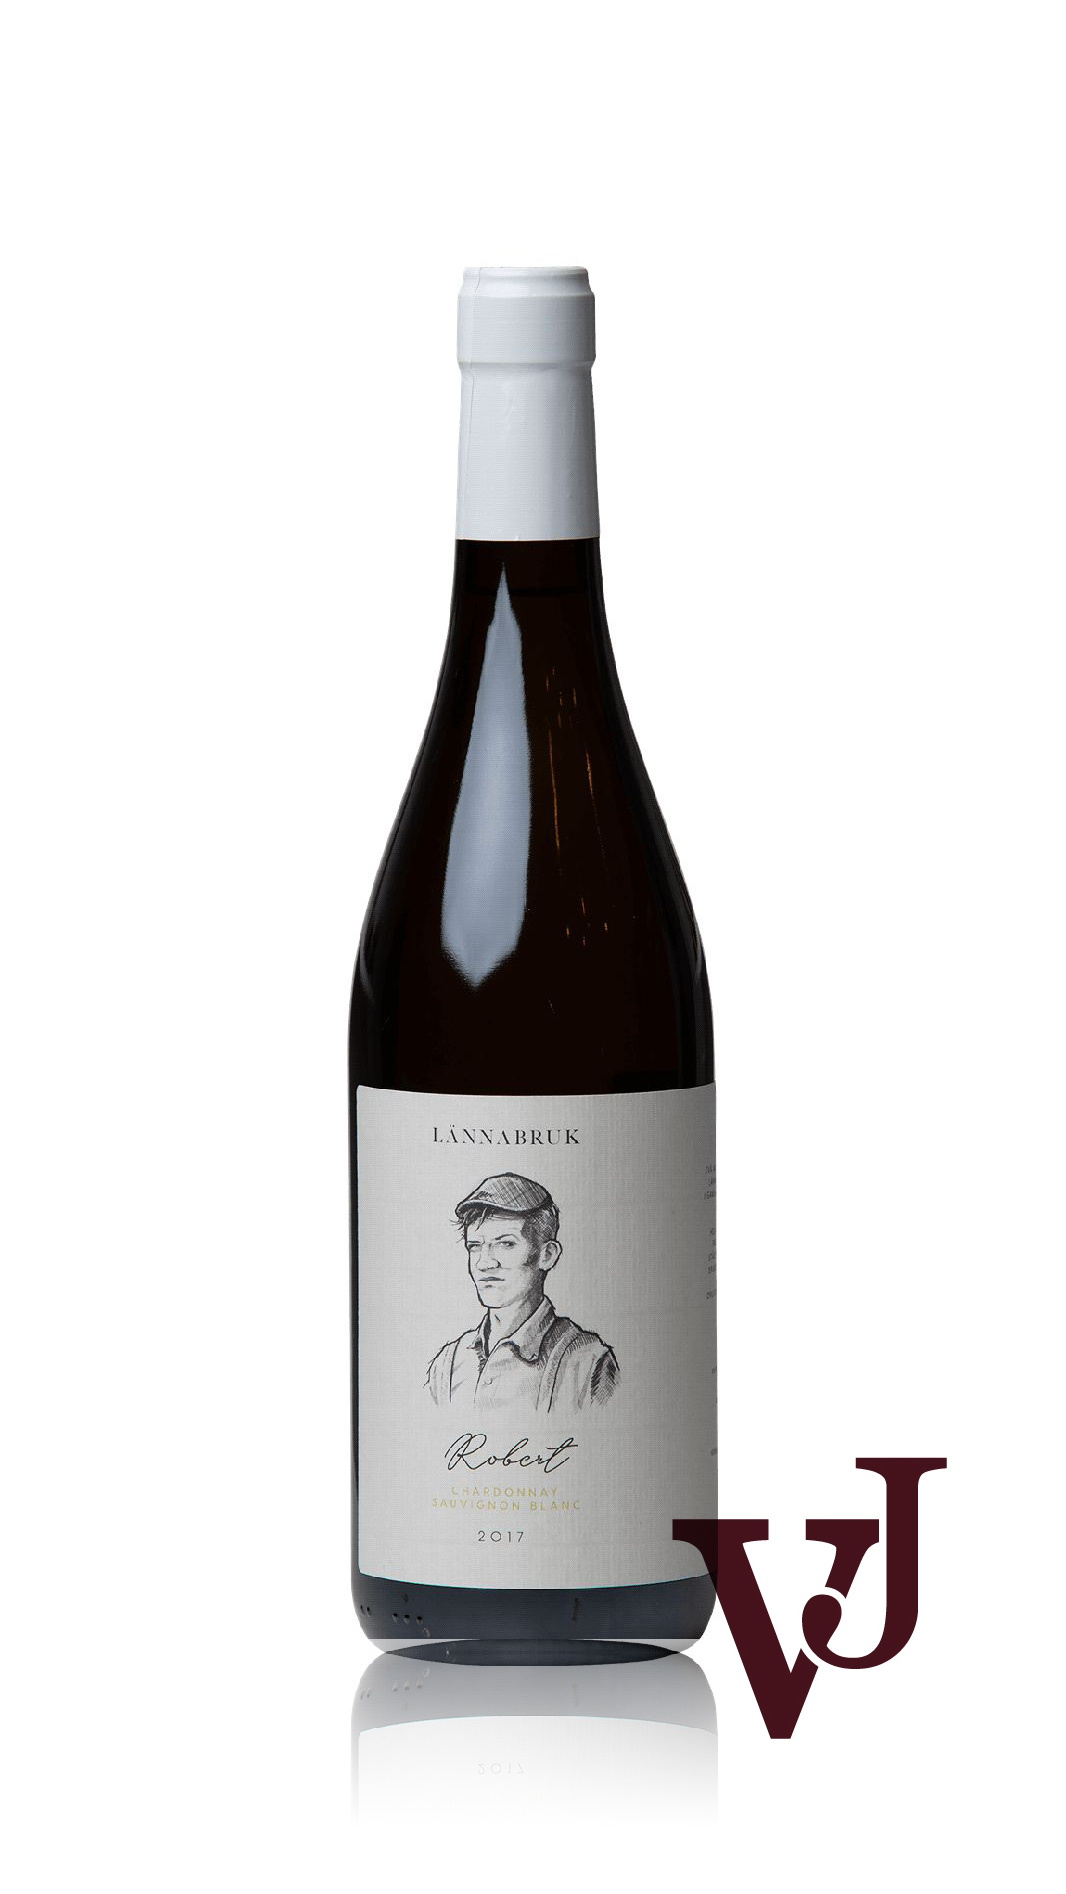 Vitt Vin - Robert Chardonnay Sauvignon Blanc artikel nummer 7440301 från producenten Länna Bruk Dryckeshandel från området Grekland